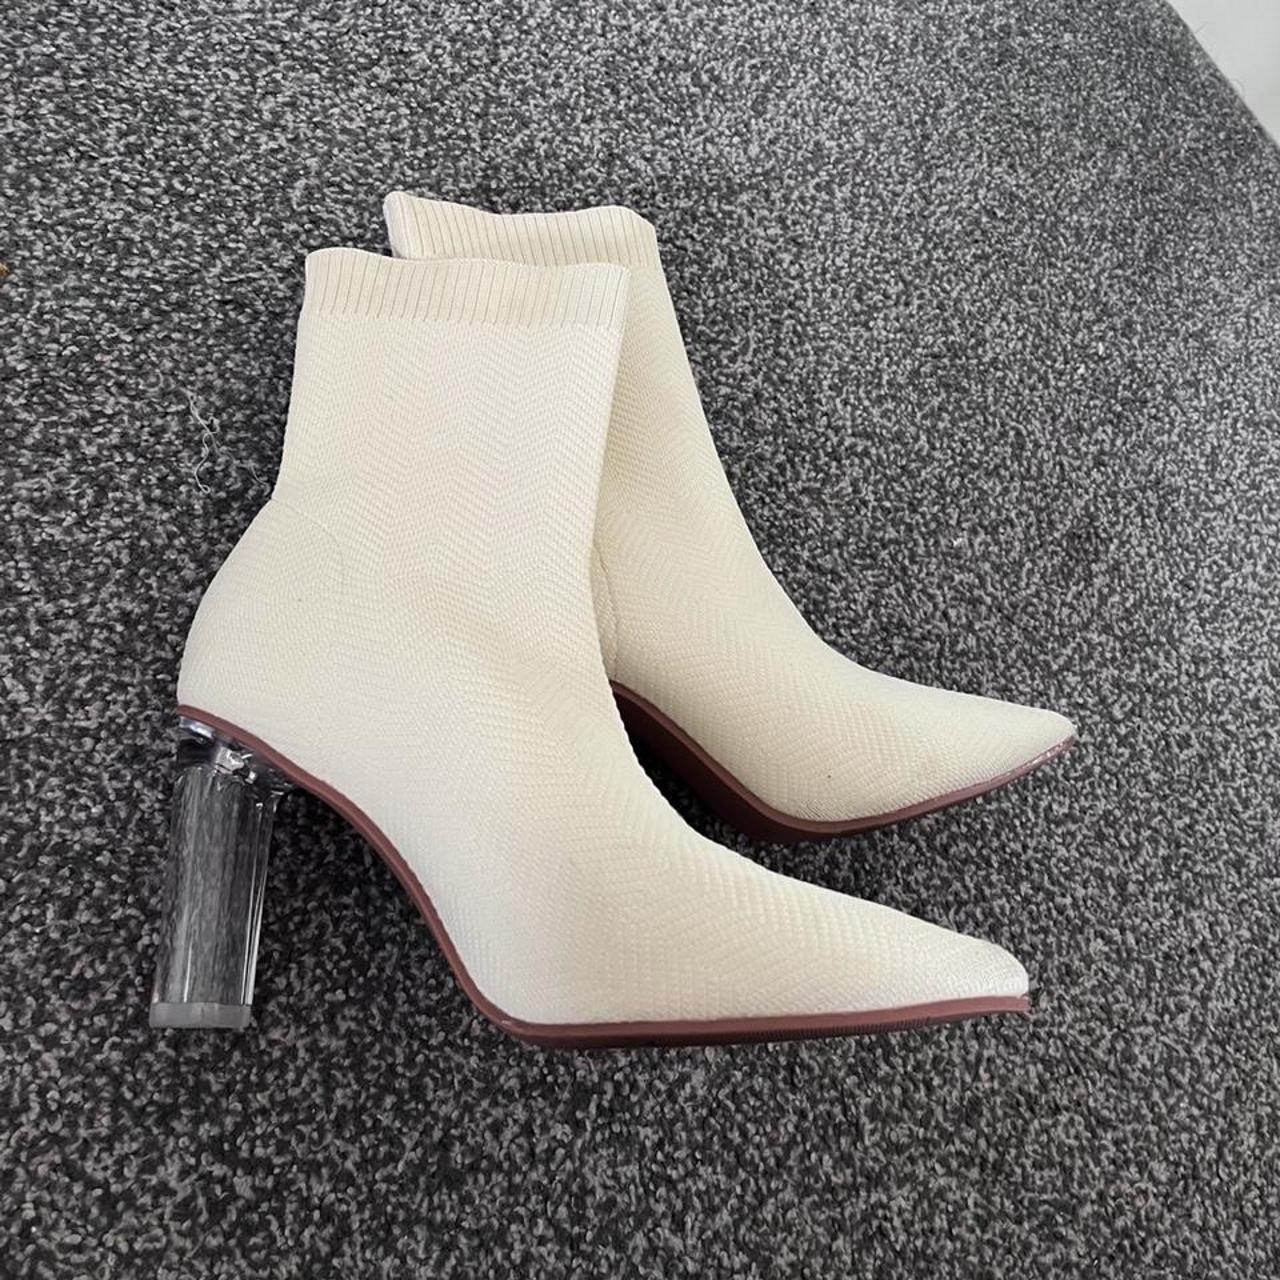 Beige Sock Boots with Perspex heel - Size 6 - Good... - Depop